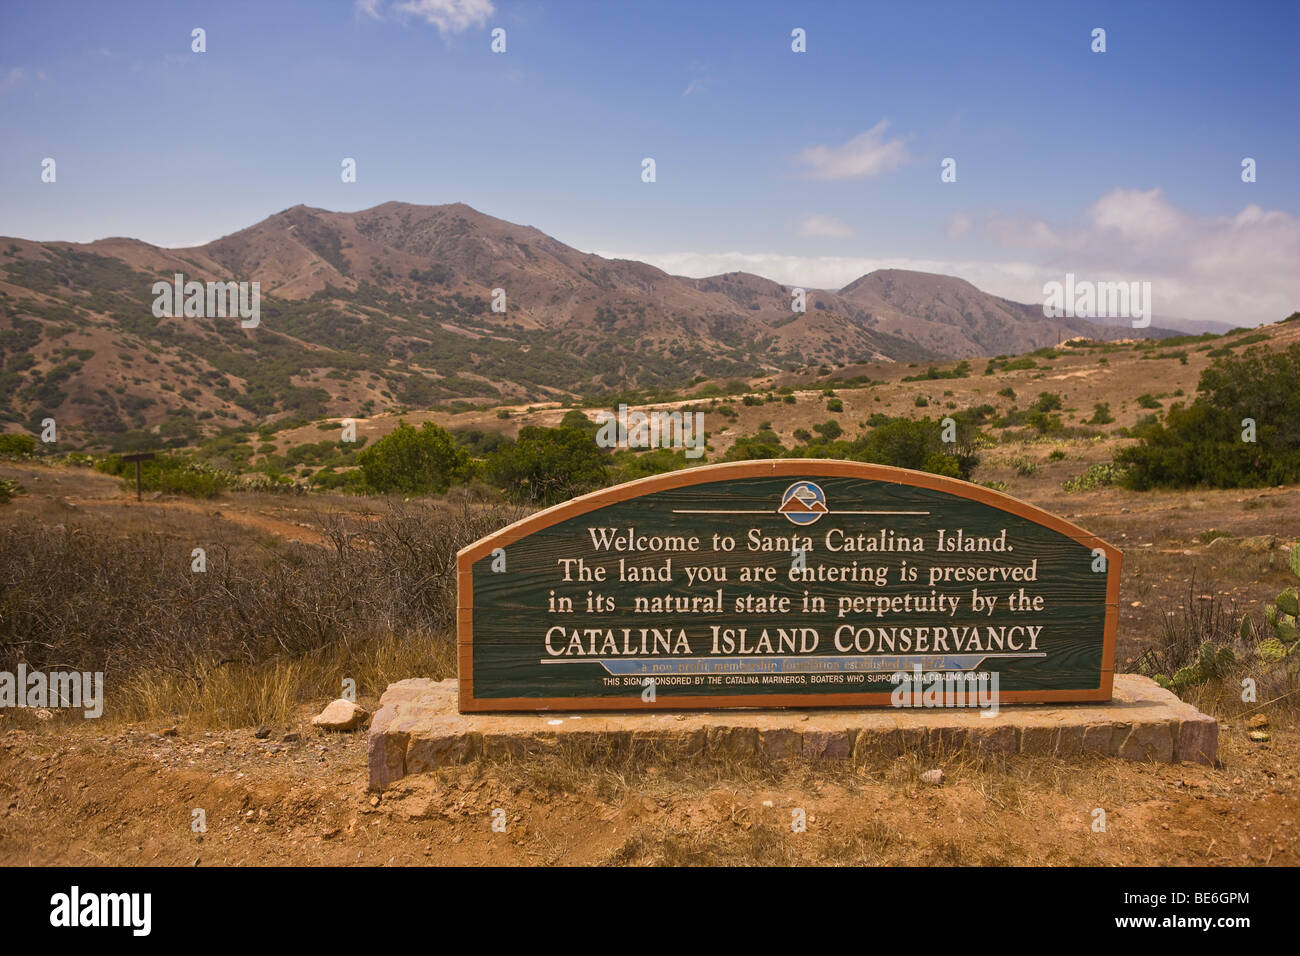 CA, Stati Uniti d'America - Catalina Island Conservancy segno, Isola di Santa Catalina Foto Stock